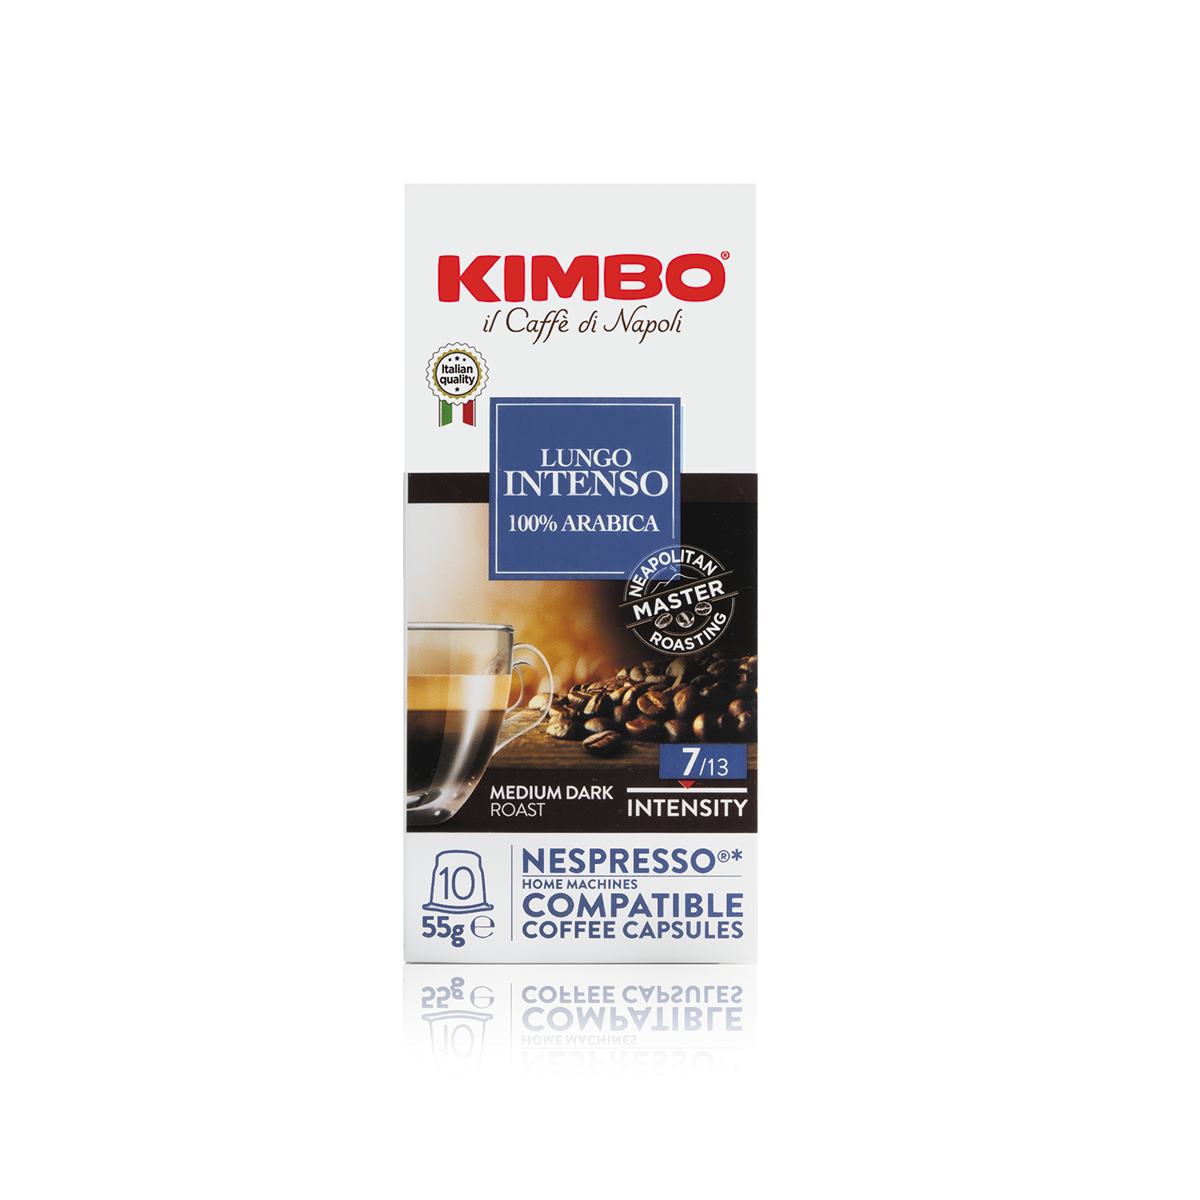 Kimbo il Caffe di Napoli Nespresso Original Compatible Capsules 10ct Lungo Intenso